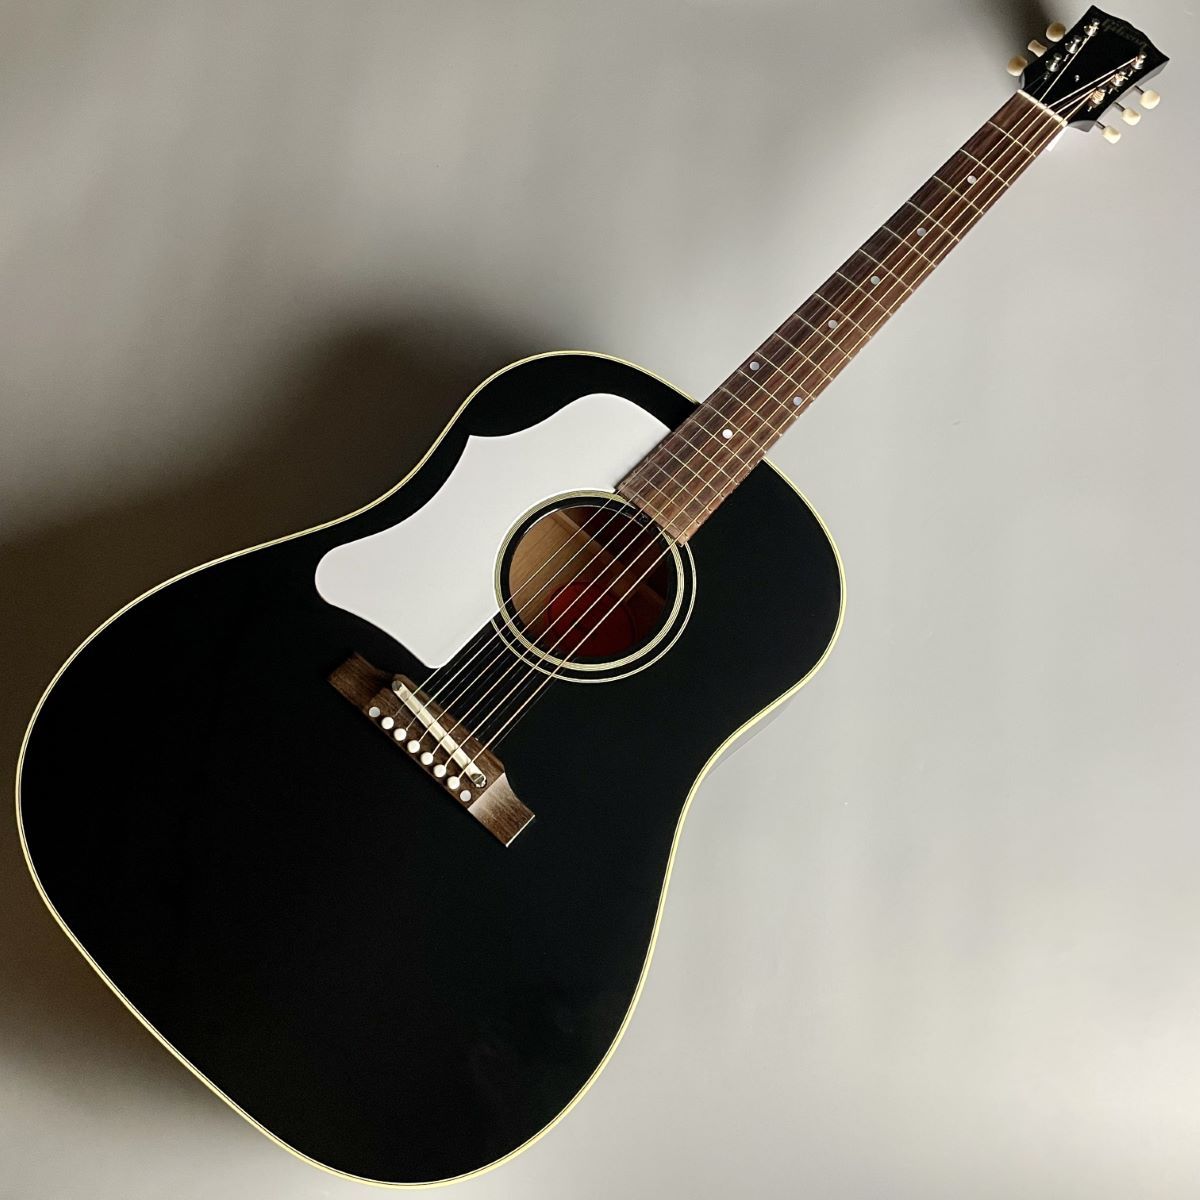 経典 カスタムショップ製 Gibson 1960's J-45 希少カラー